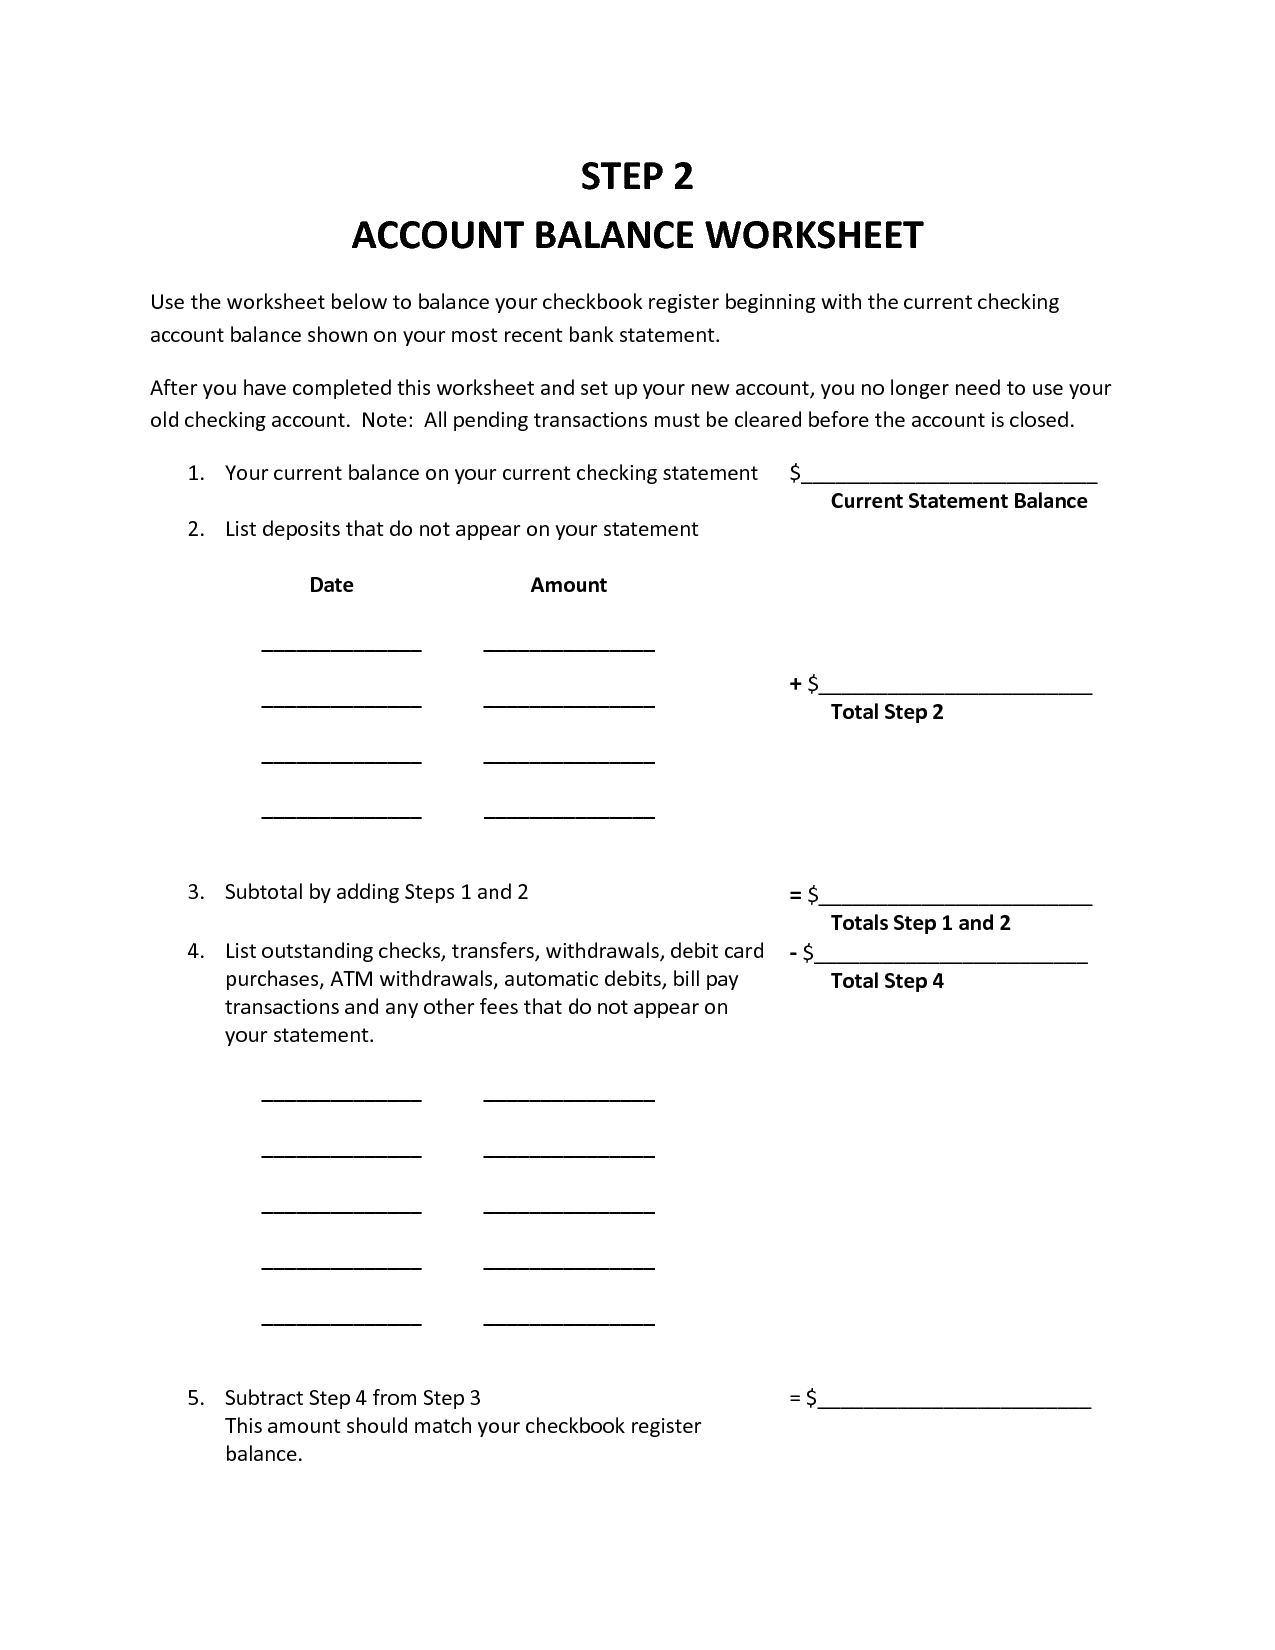 Account Balance Worksheet Image